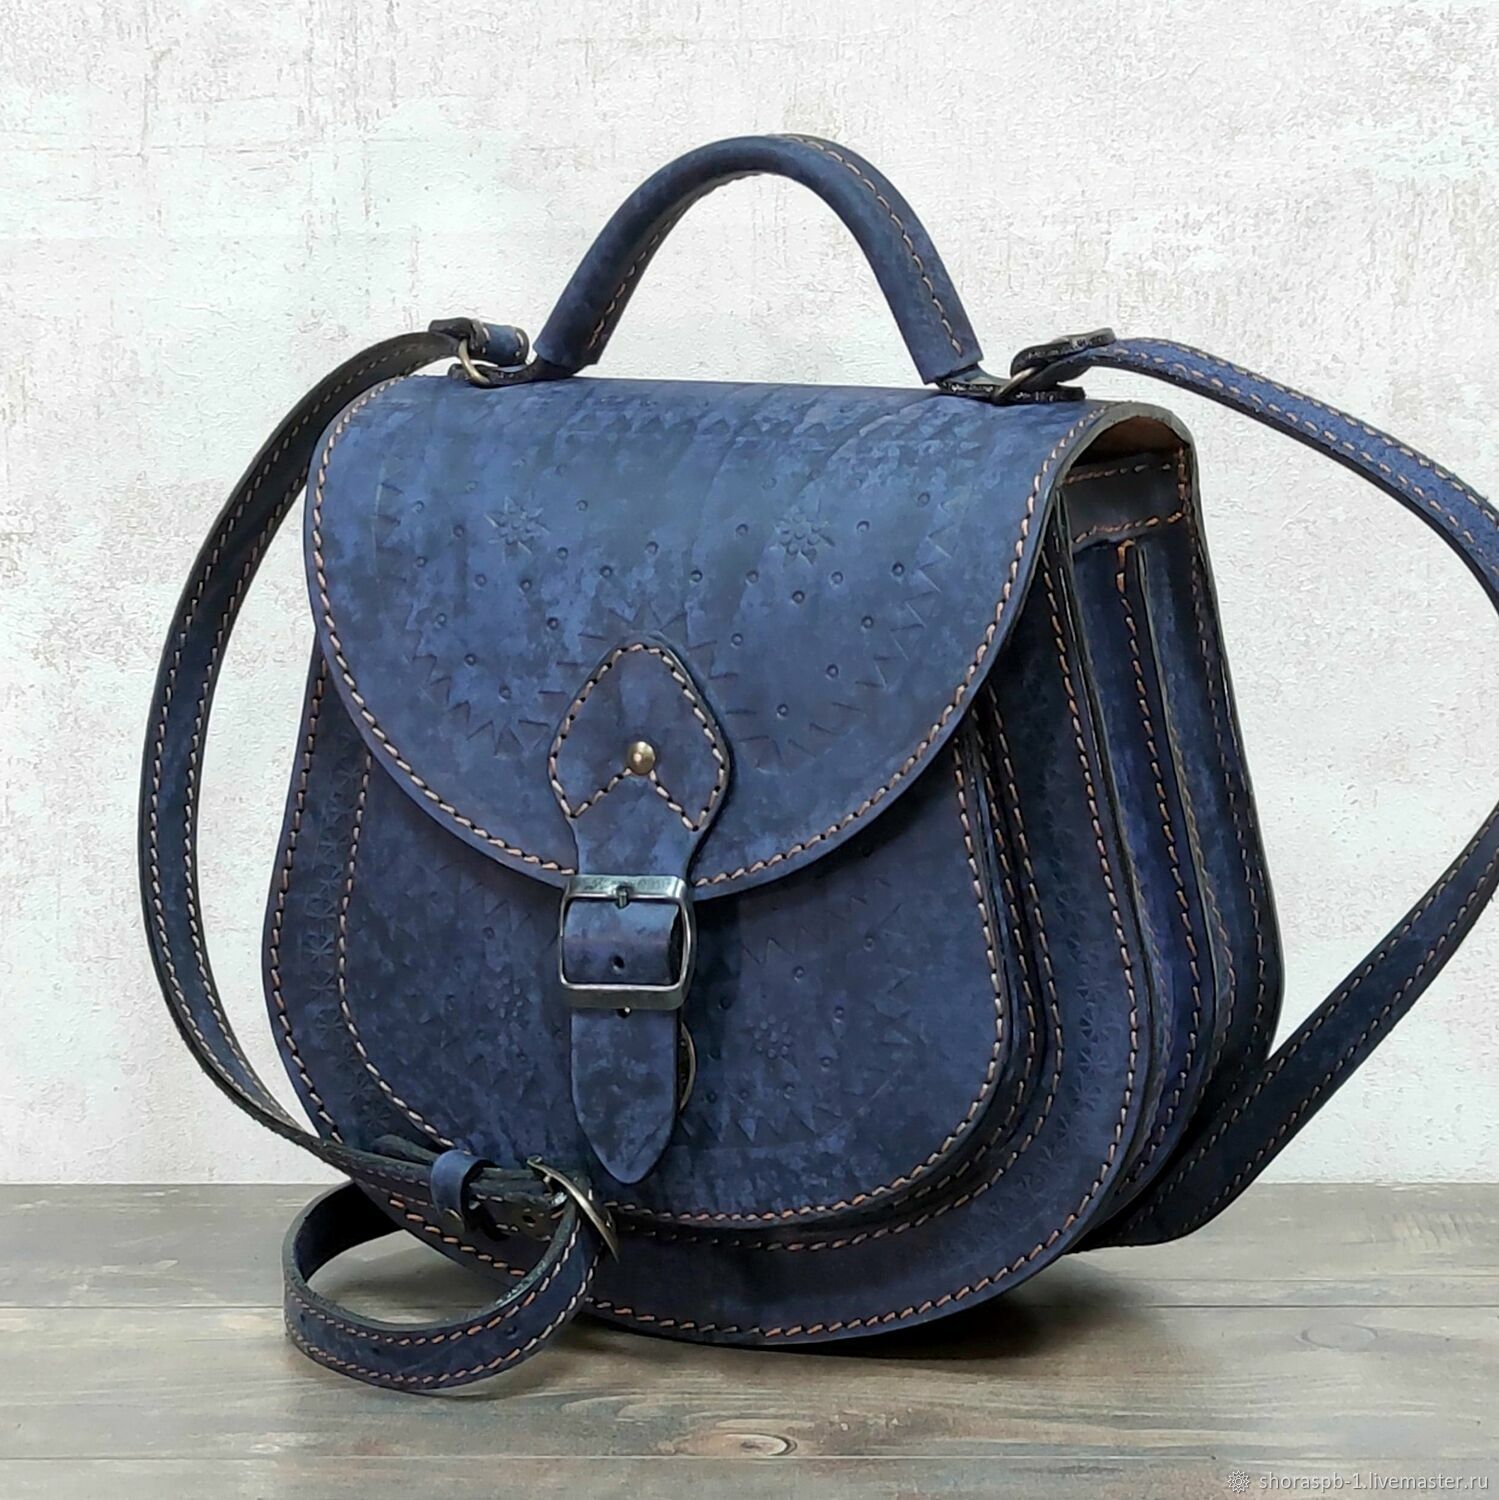 Женская сумка синяя, артикул 0712c, Классическая сумка, Санкт-Петербург,  Фото №1